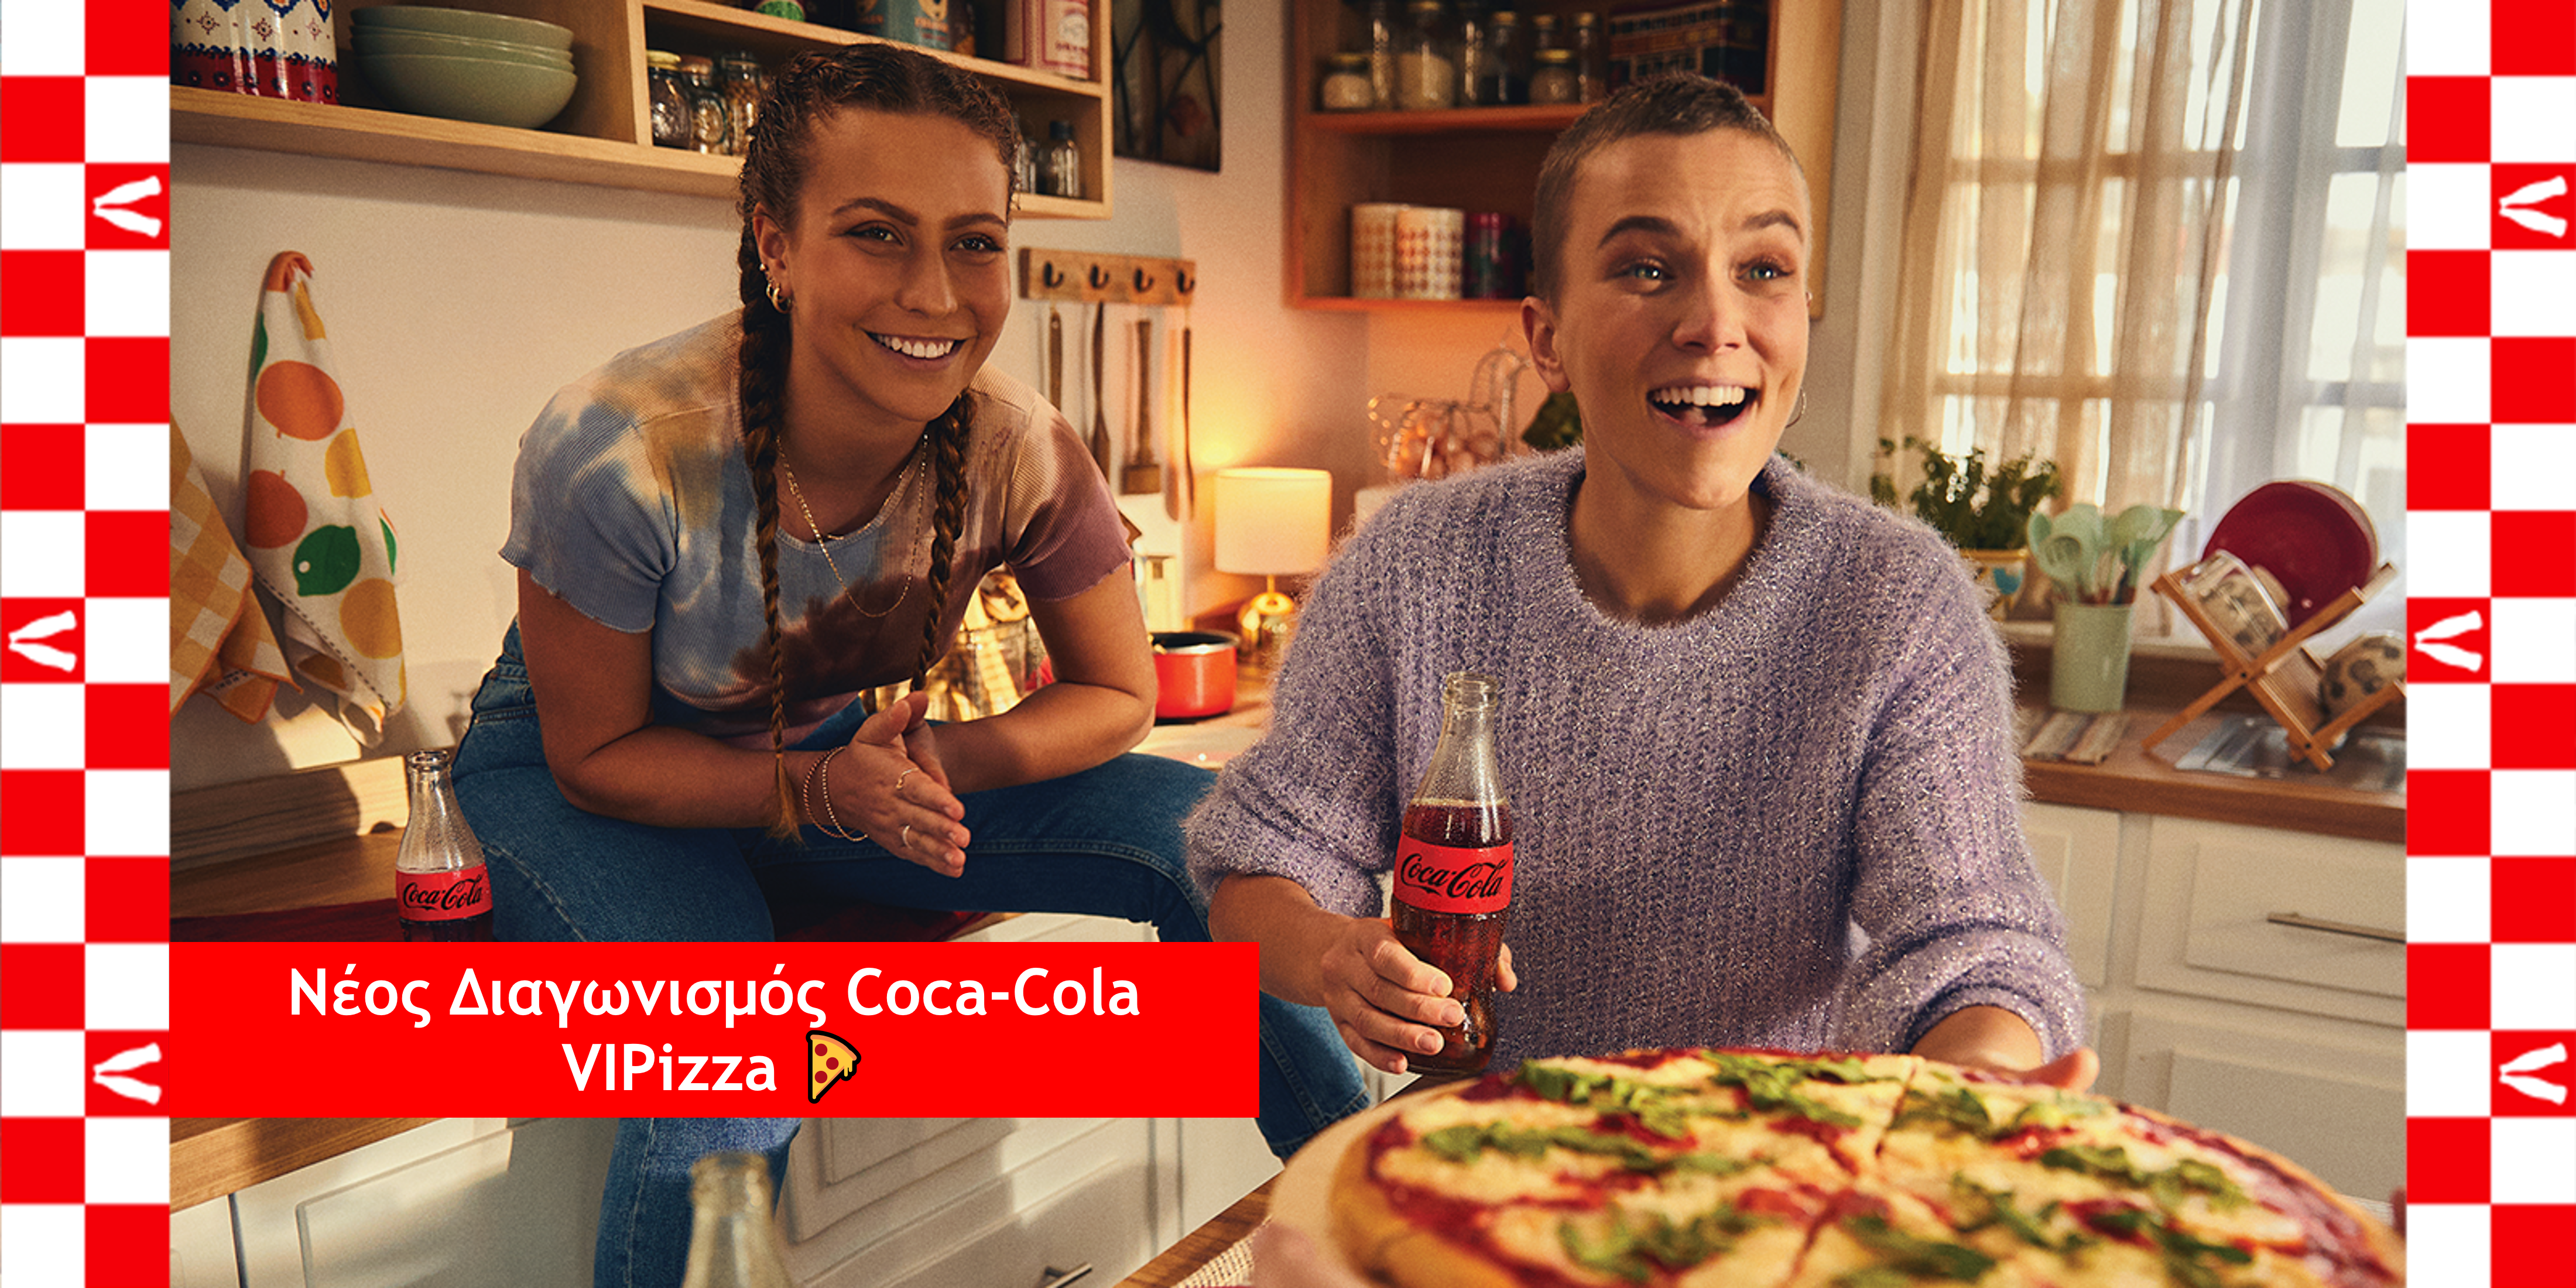 Coca-Cola and pizza